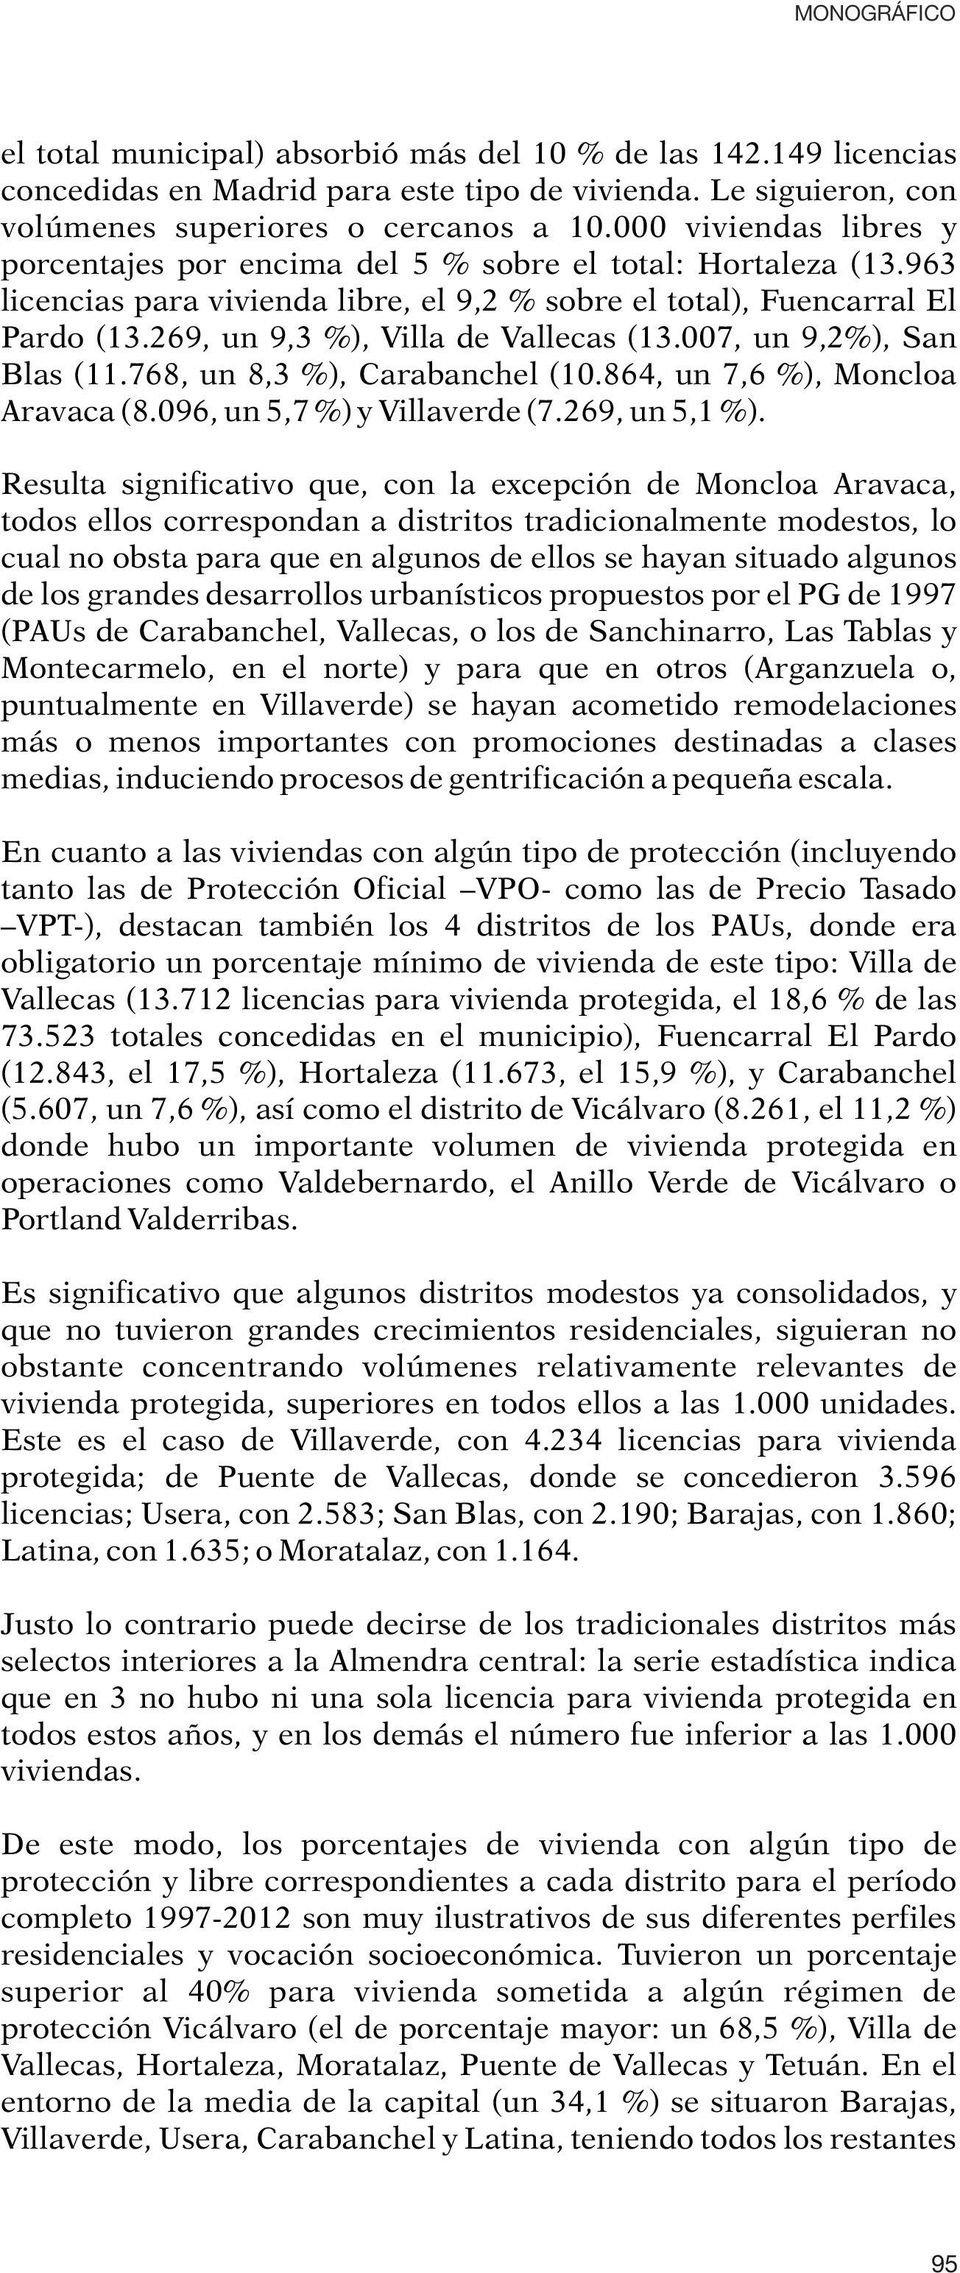 269, un 9,3 %), Villa de Vallecas (13.007, un 9,2%), San Blas (11.768, un 8,3 %), Carabanchel (10.864, un 7,6 %), Moncloa Aravaca (8.096, un 5,7 %) y Villaverde (7.269, un 5,1 %).